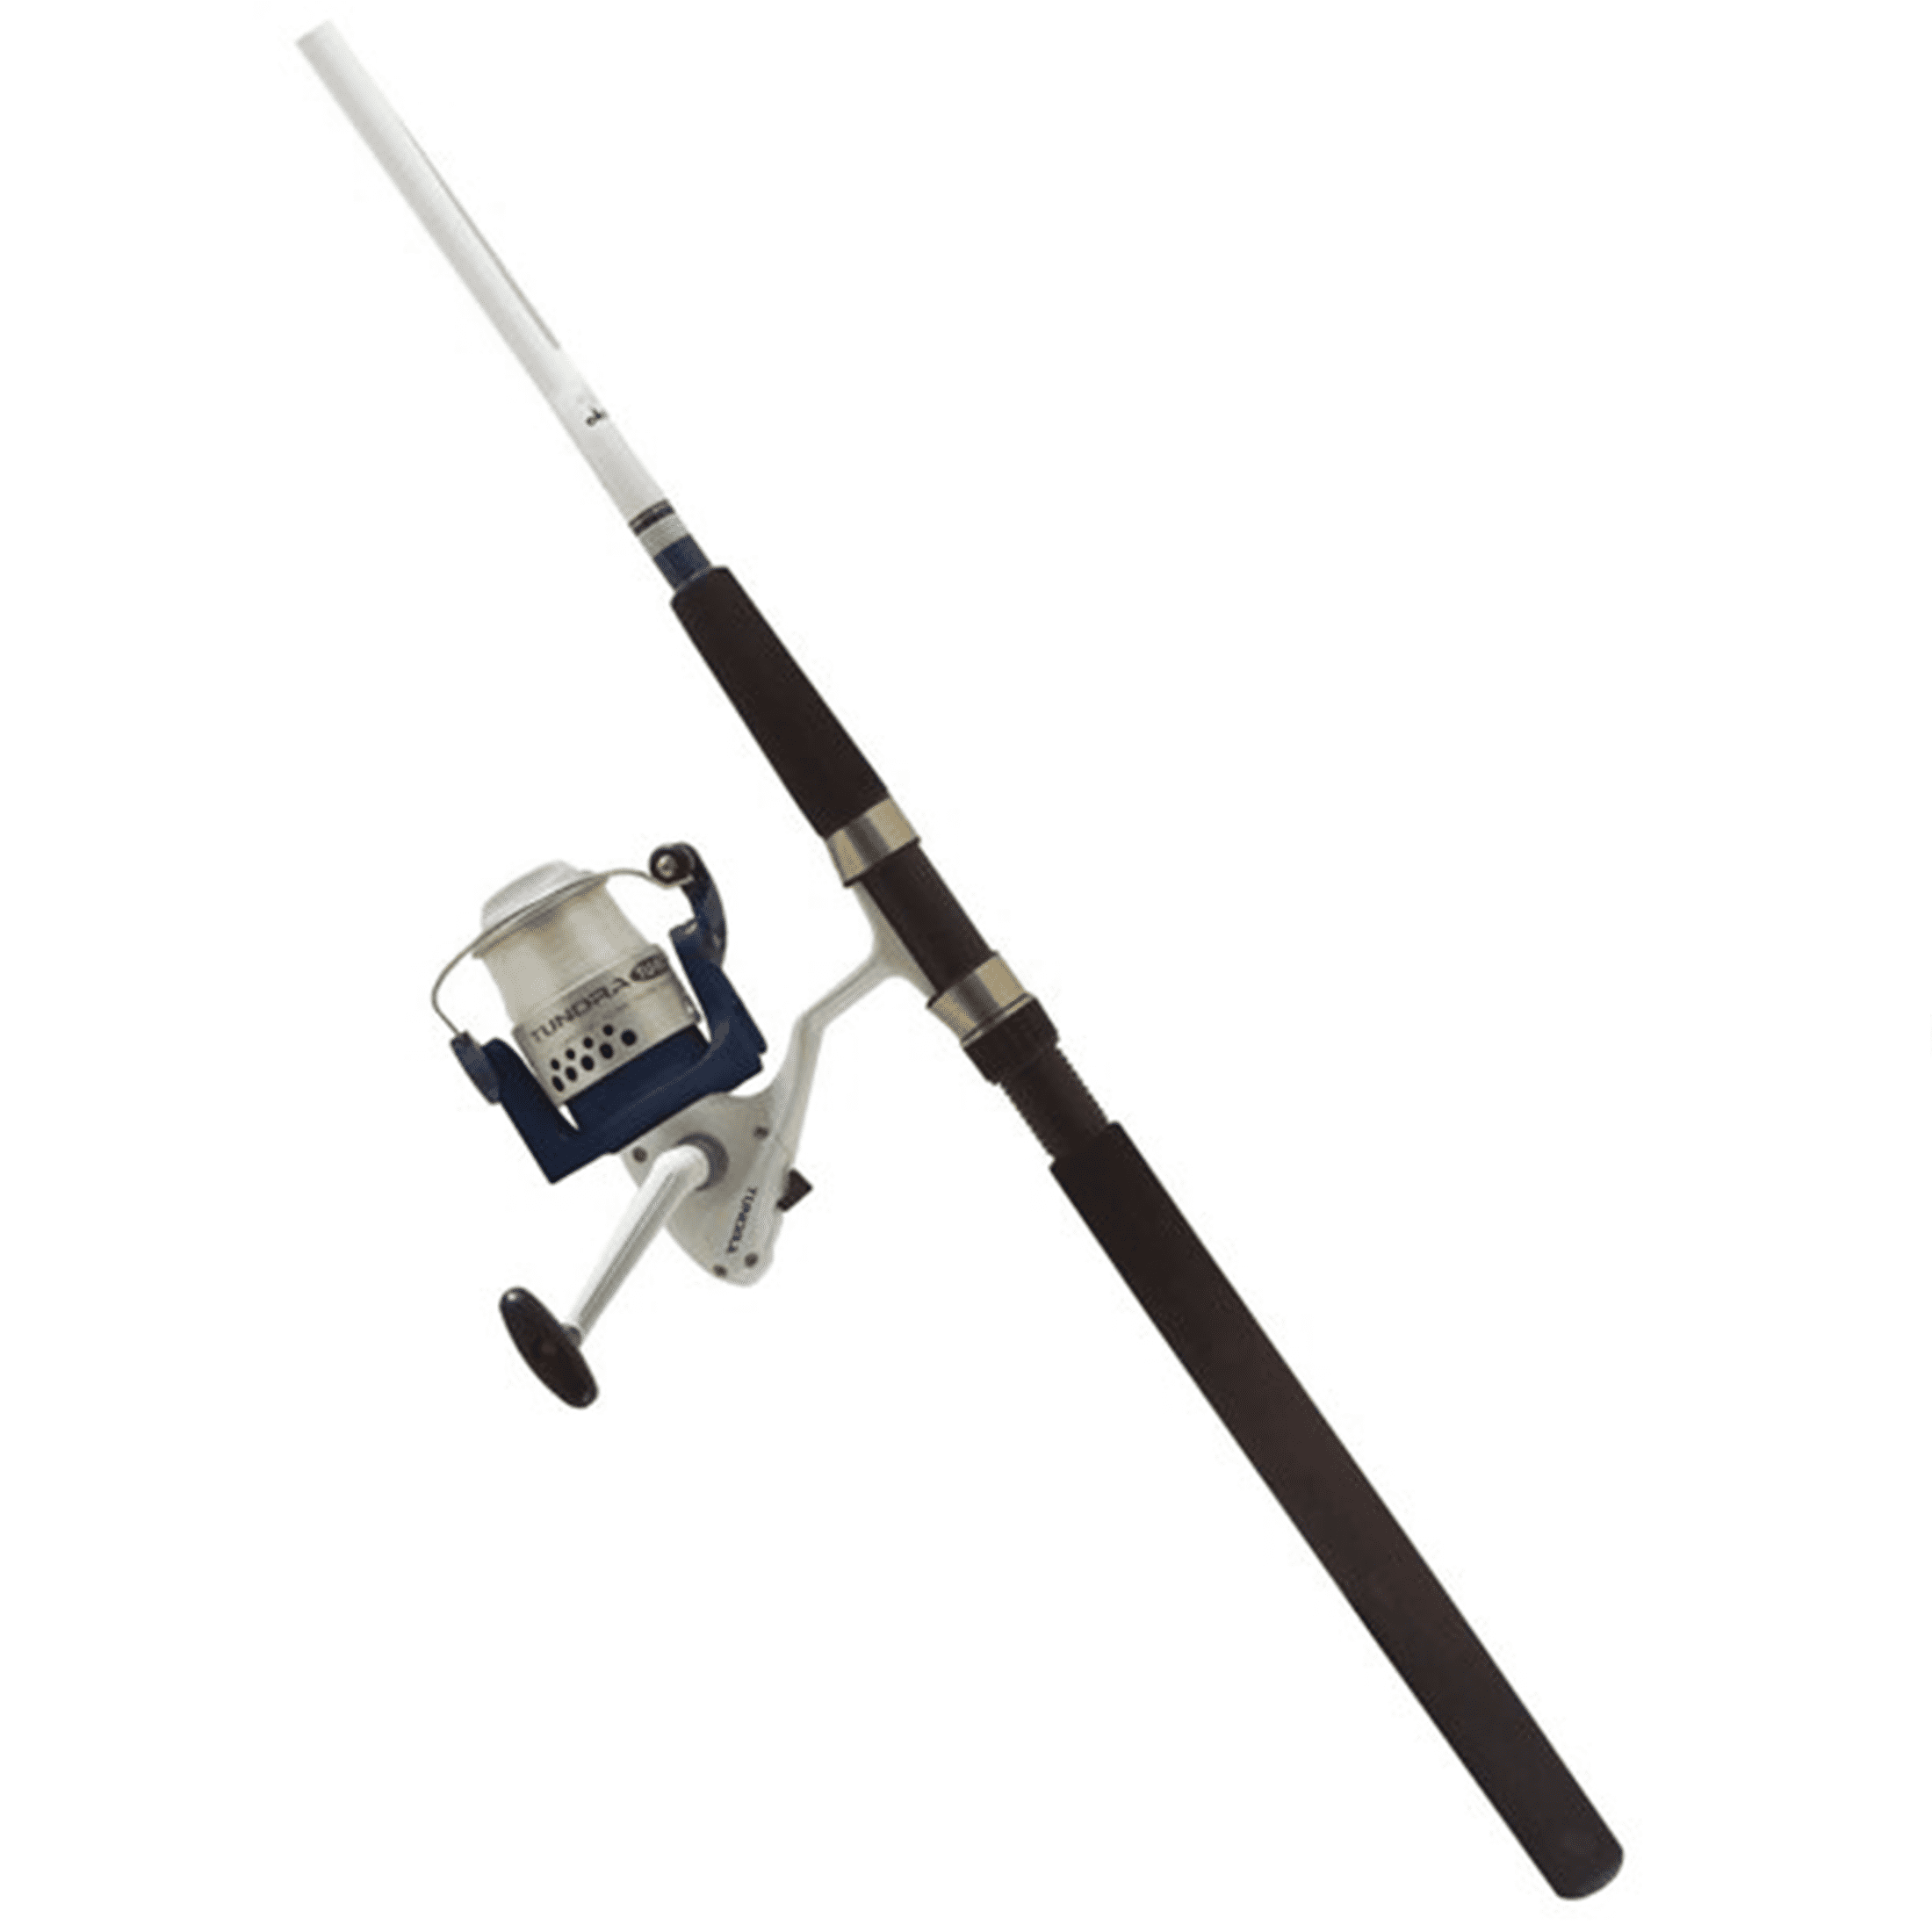 Okuma Tundra HD 10' Medium Heavy Spinning Fishing Rod and Reel Combo with  Size 80 Reel 